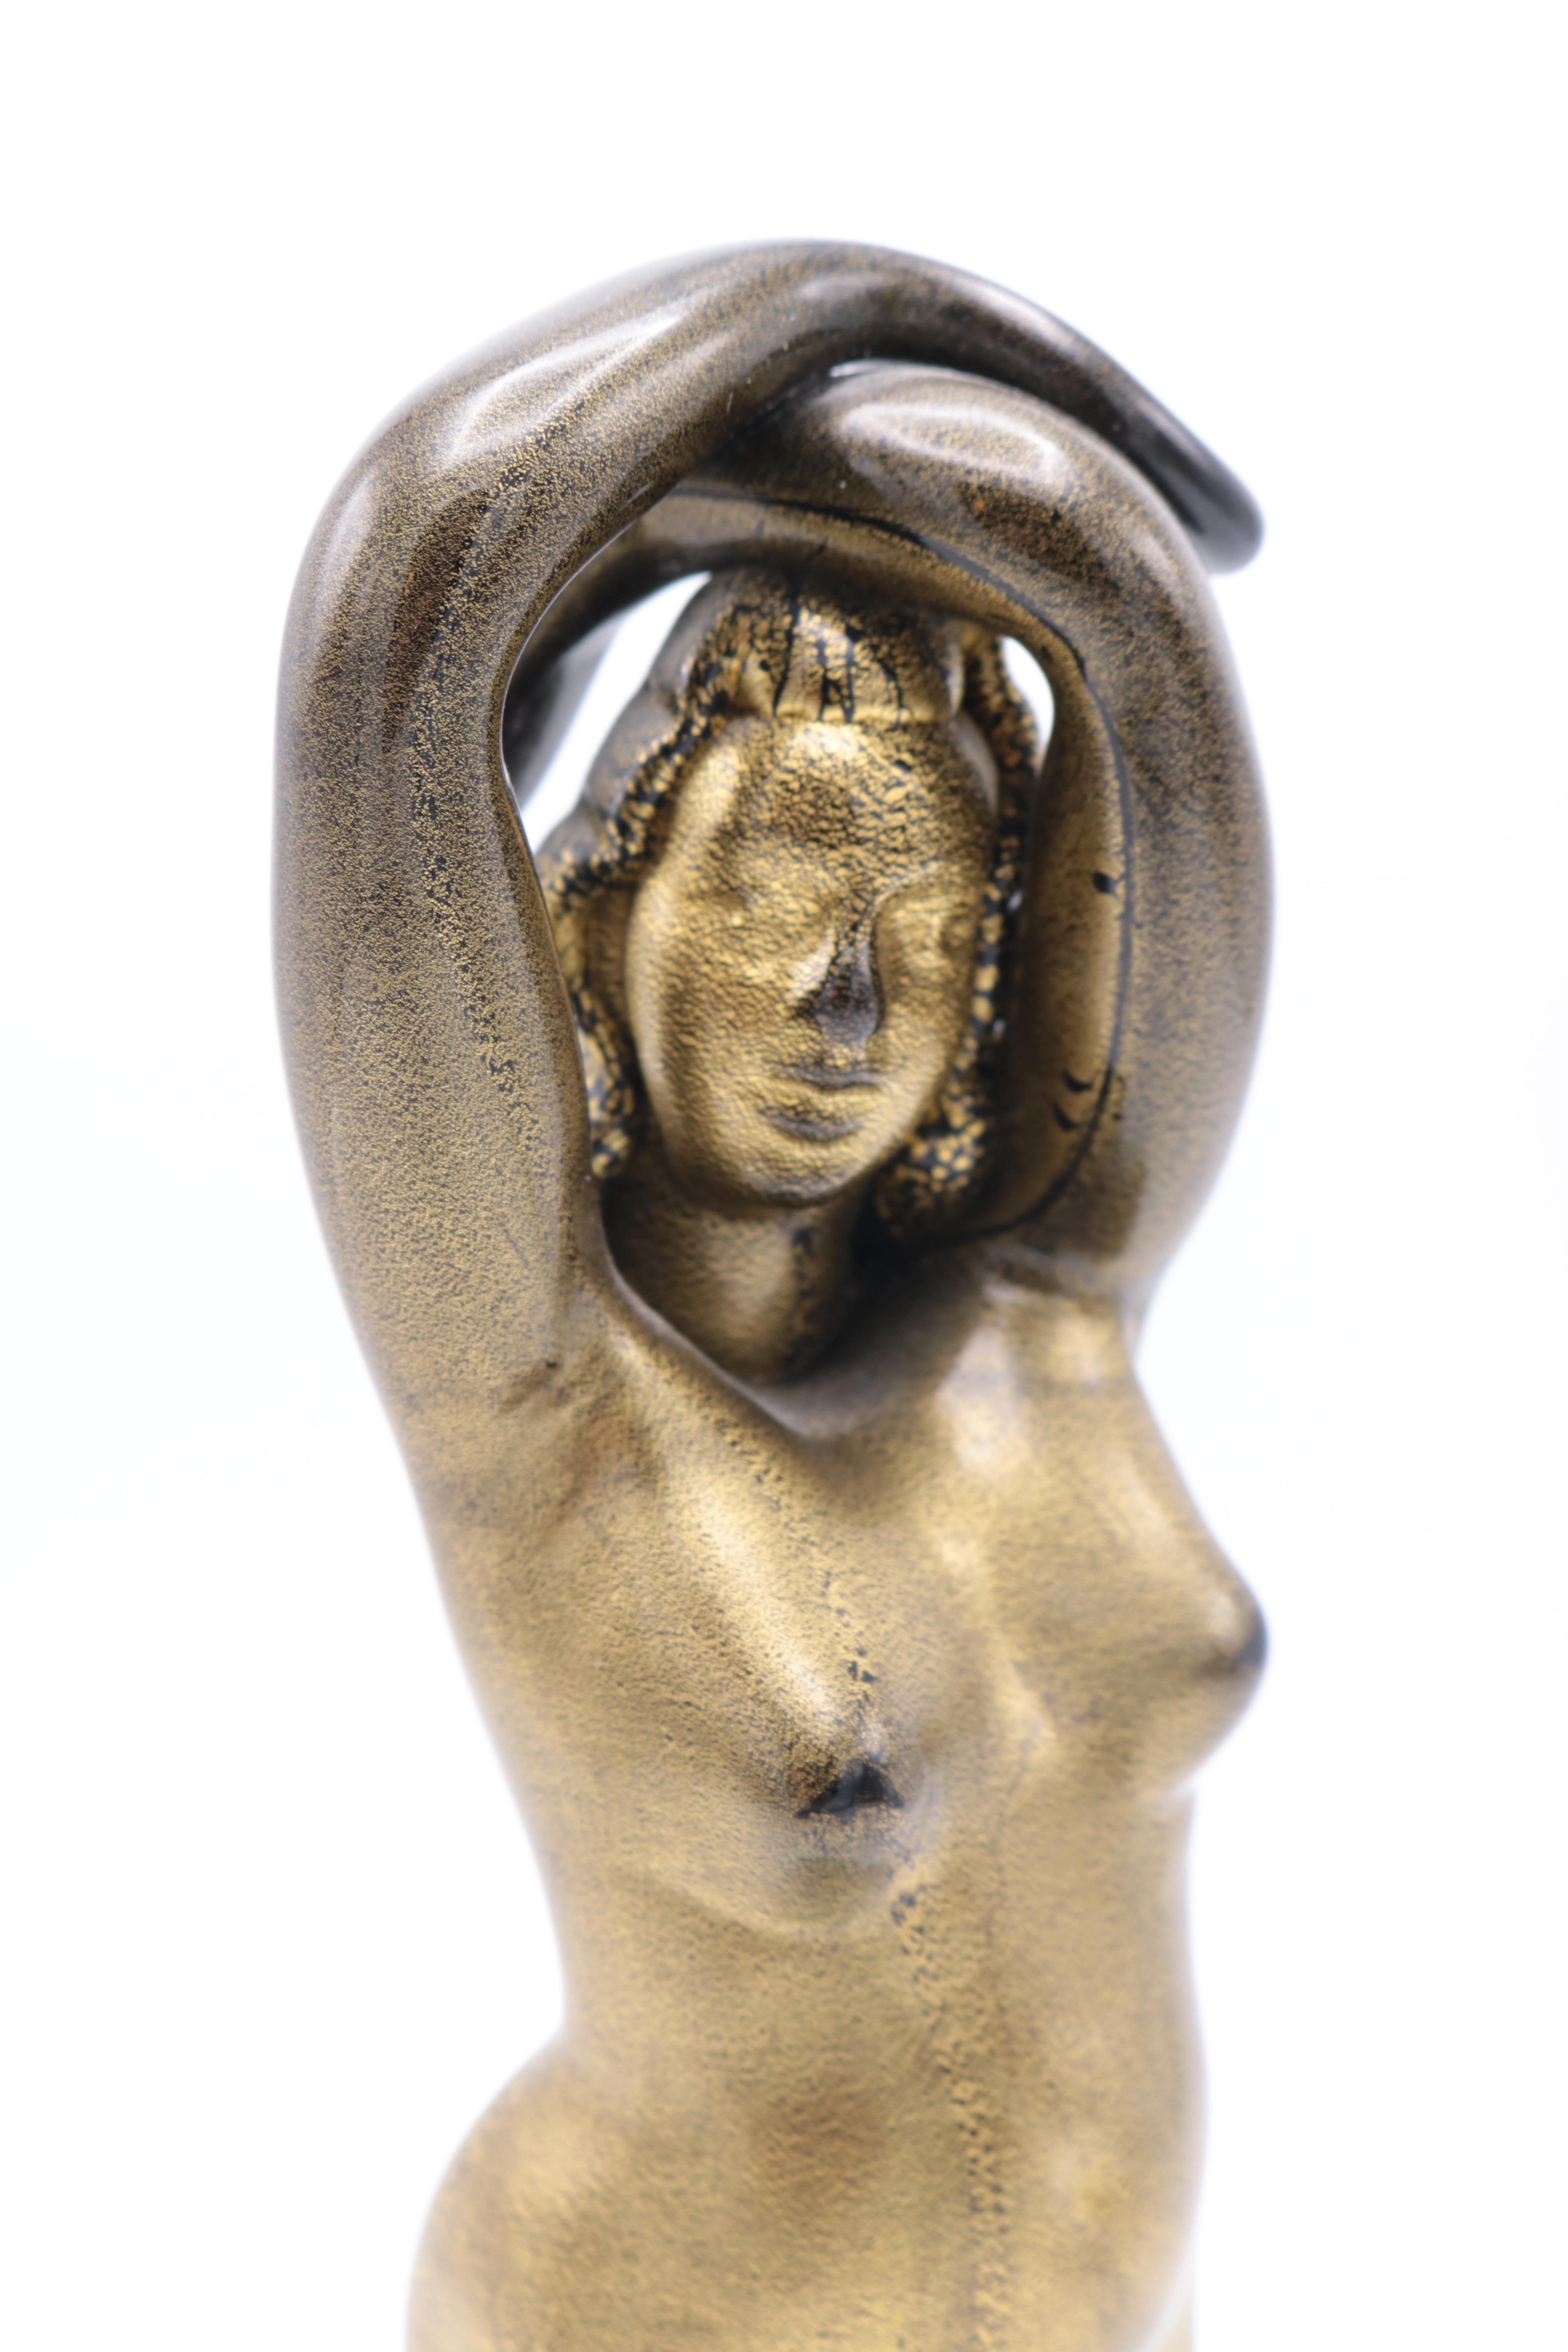 Sculpture en verre d'art italien d'Alfredo Barbini, 'Nudo a massello', fritté noir,
feuille d'or fusionnée, base transparente avec couche vert foncé. Marqué : Alfredo Barbini.